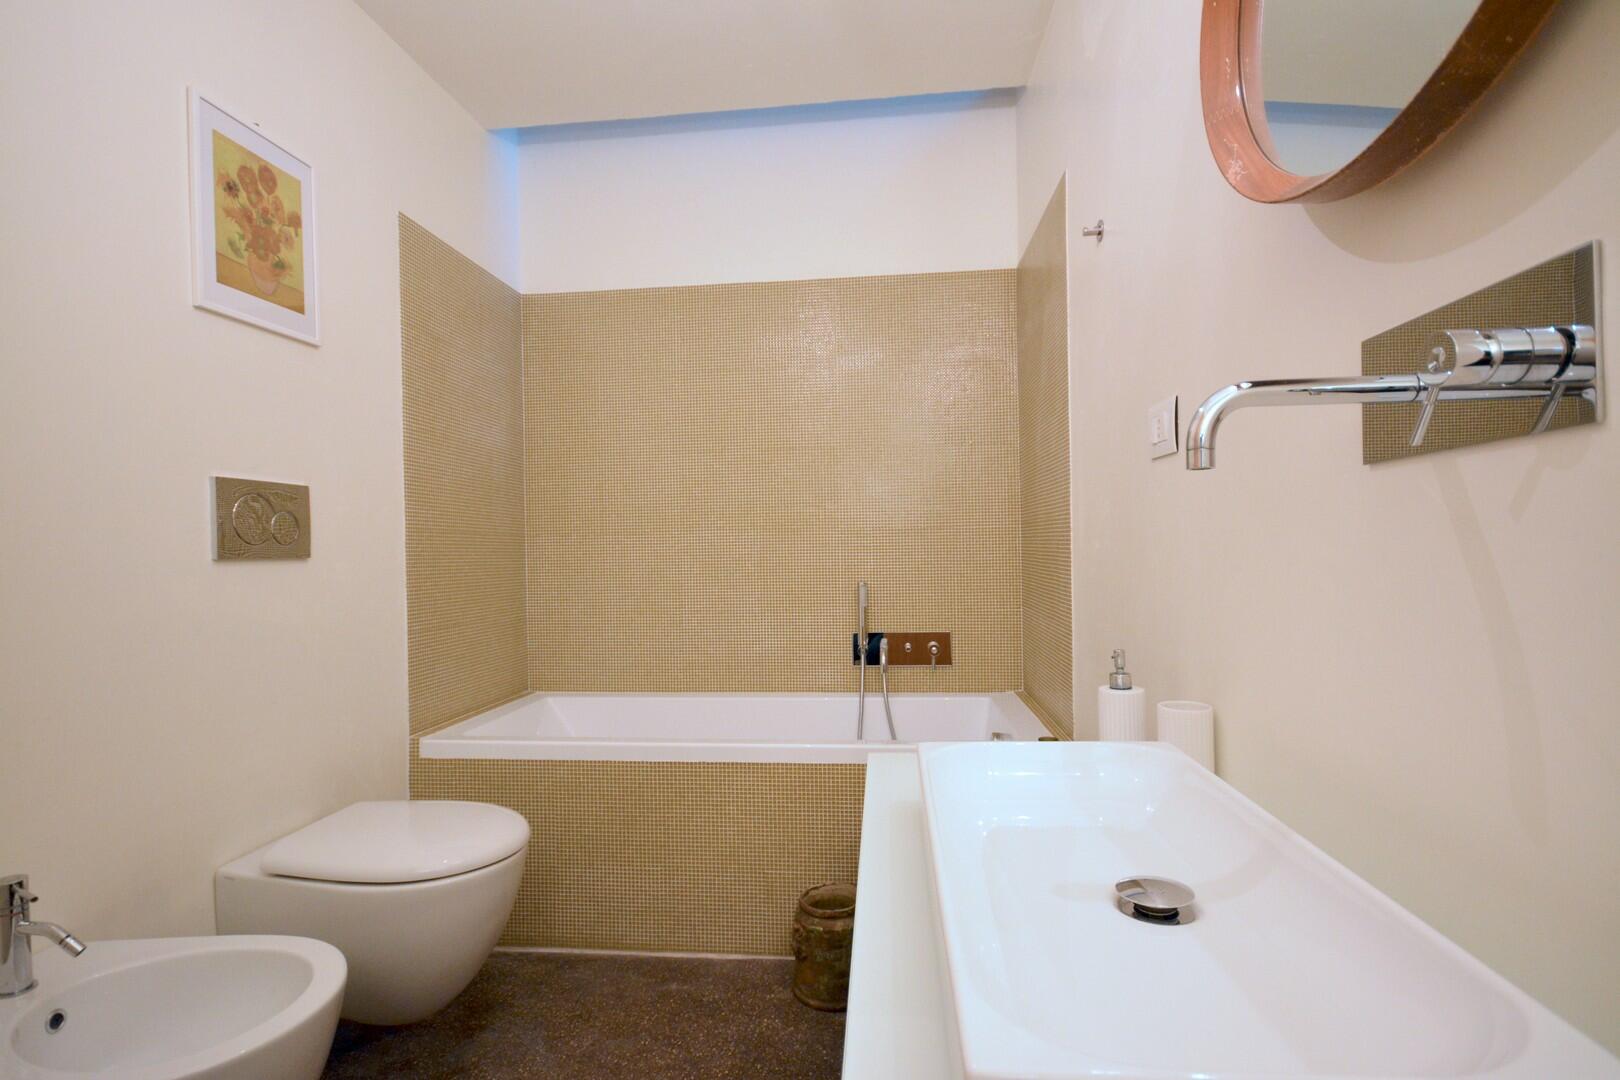 Rez-de-chaussée - chambre double C - salle de bain avec baignoire